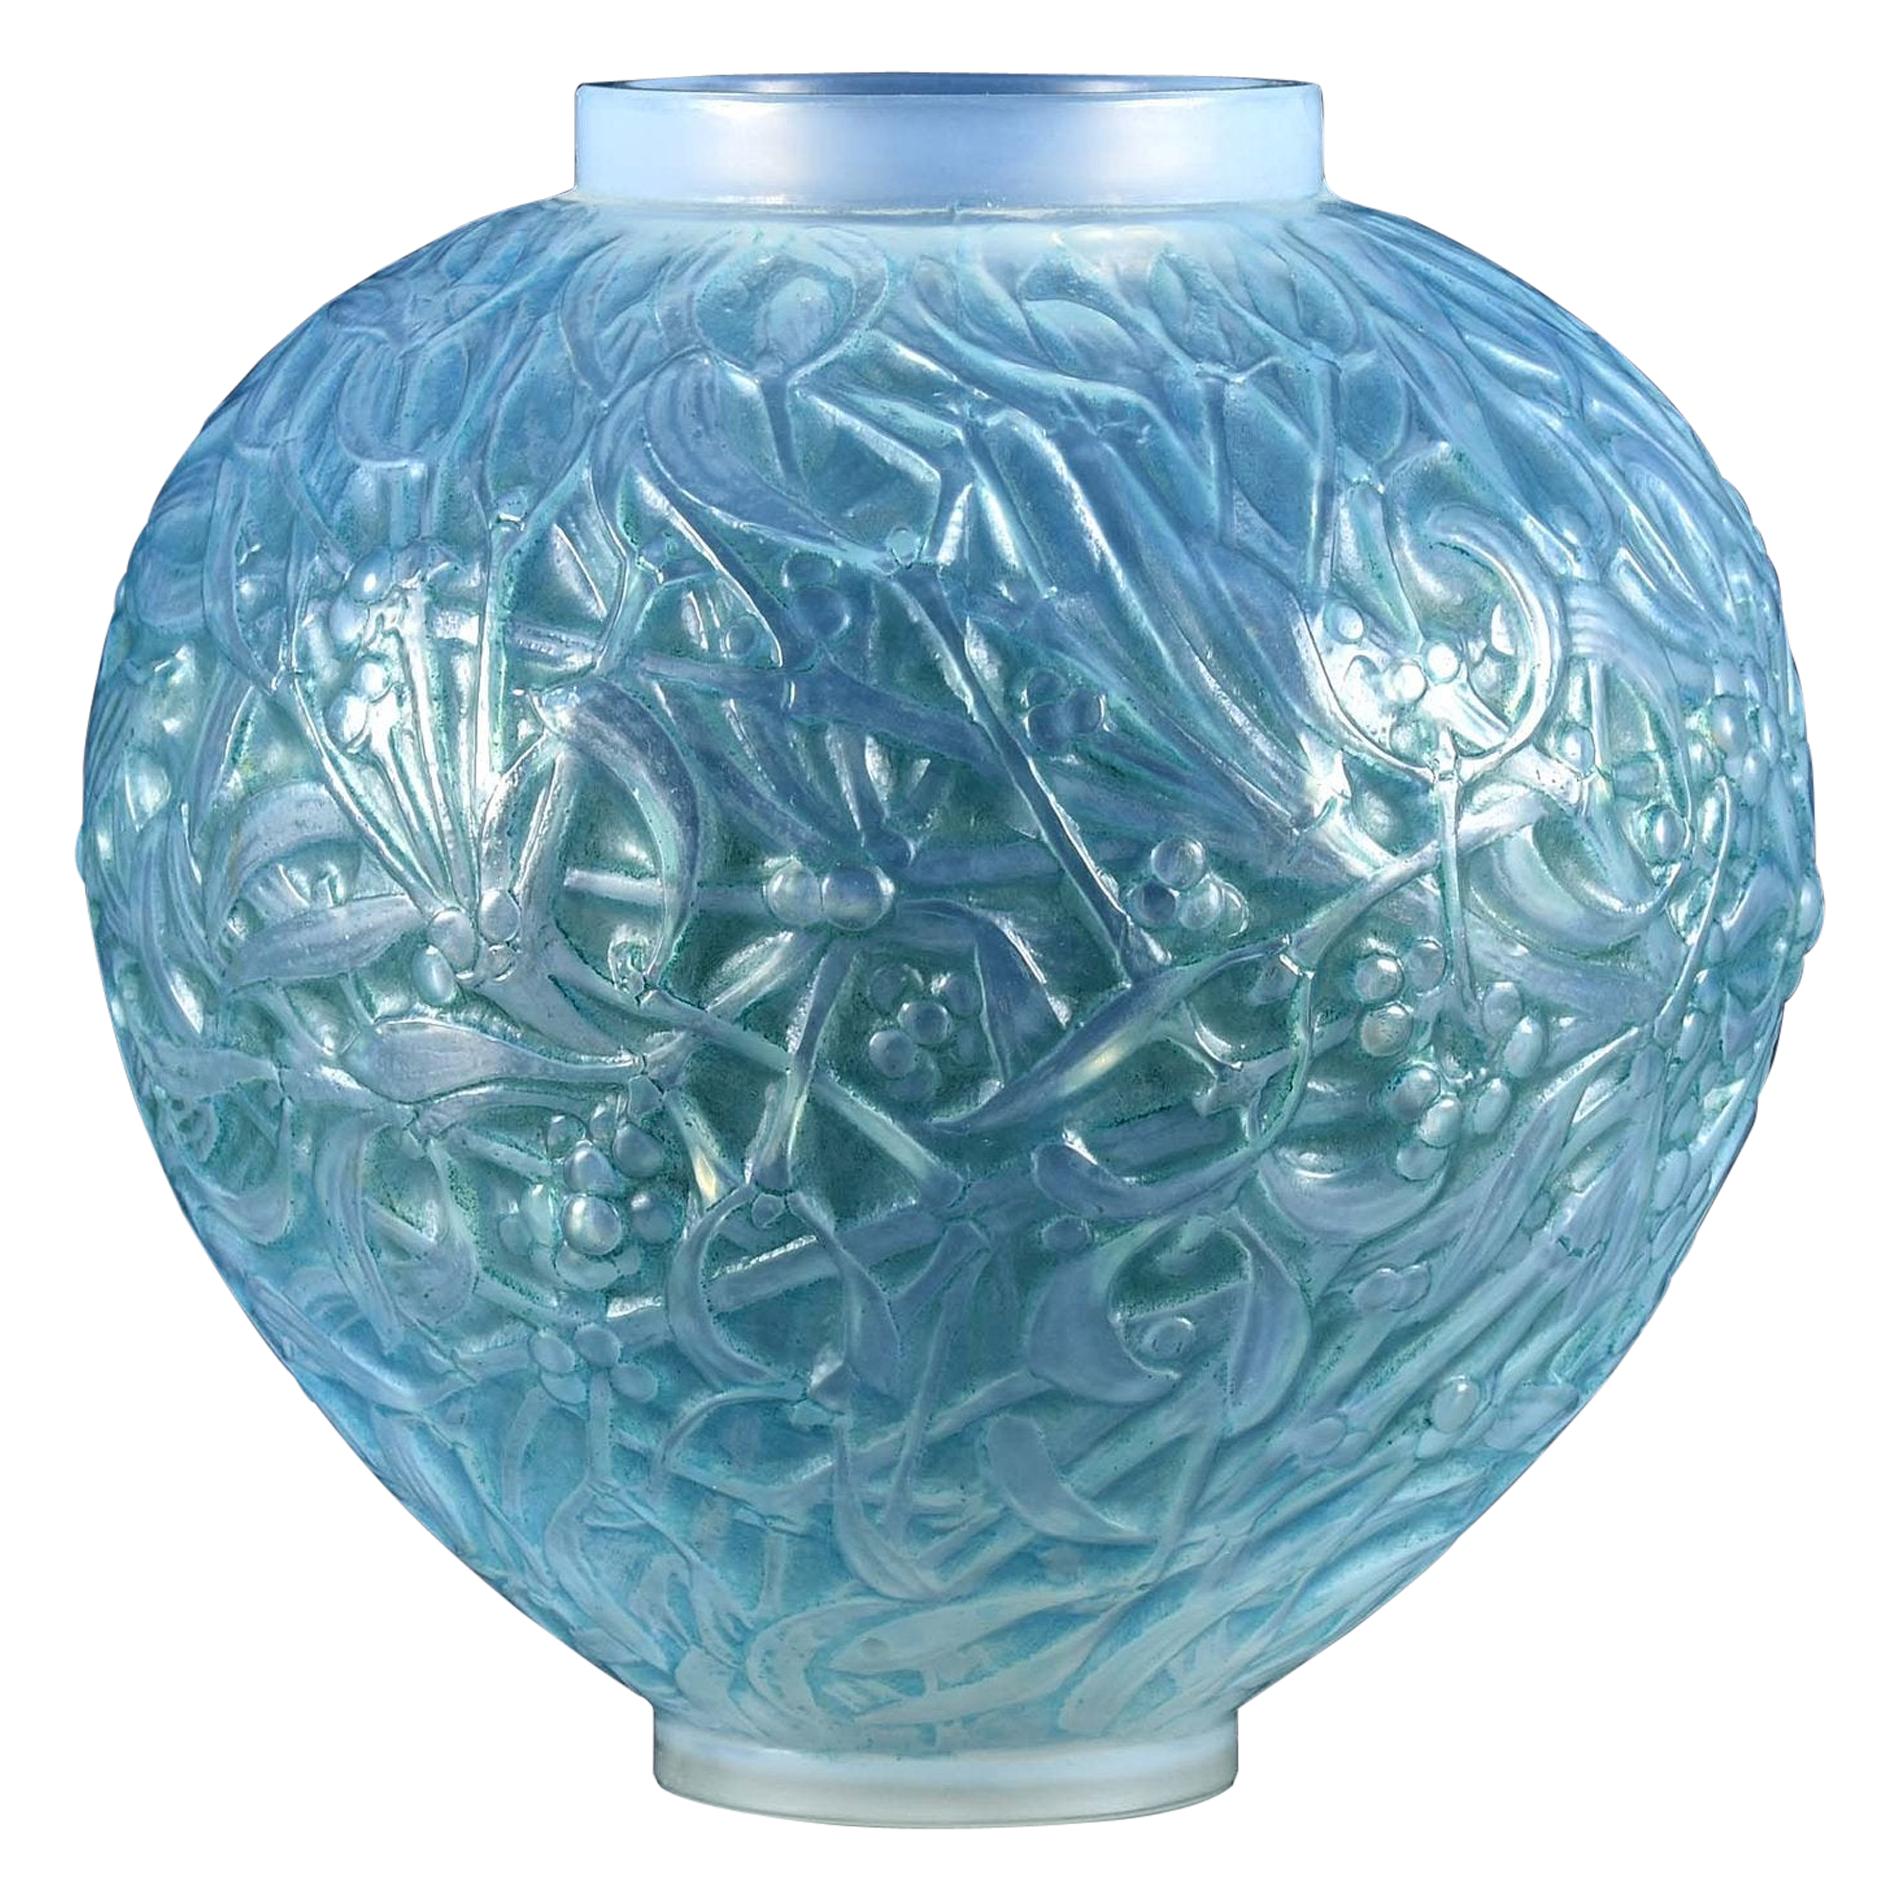 French Art Deco Opalescent Glass Vase "Blue Gui" by René Lalique